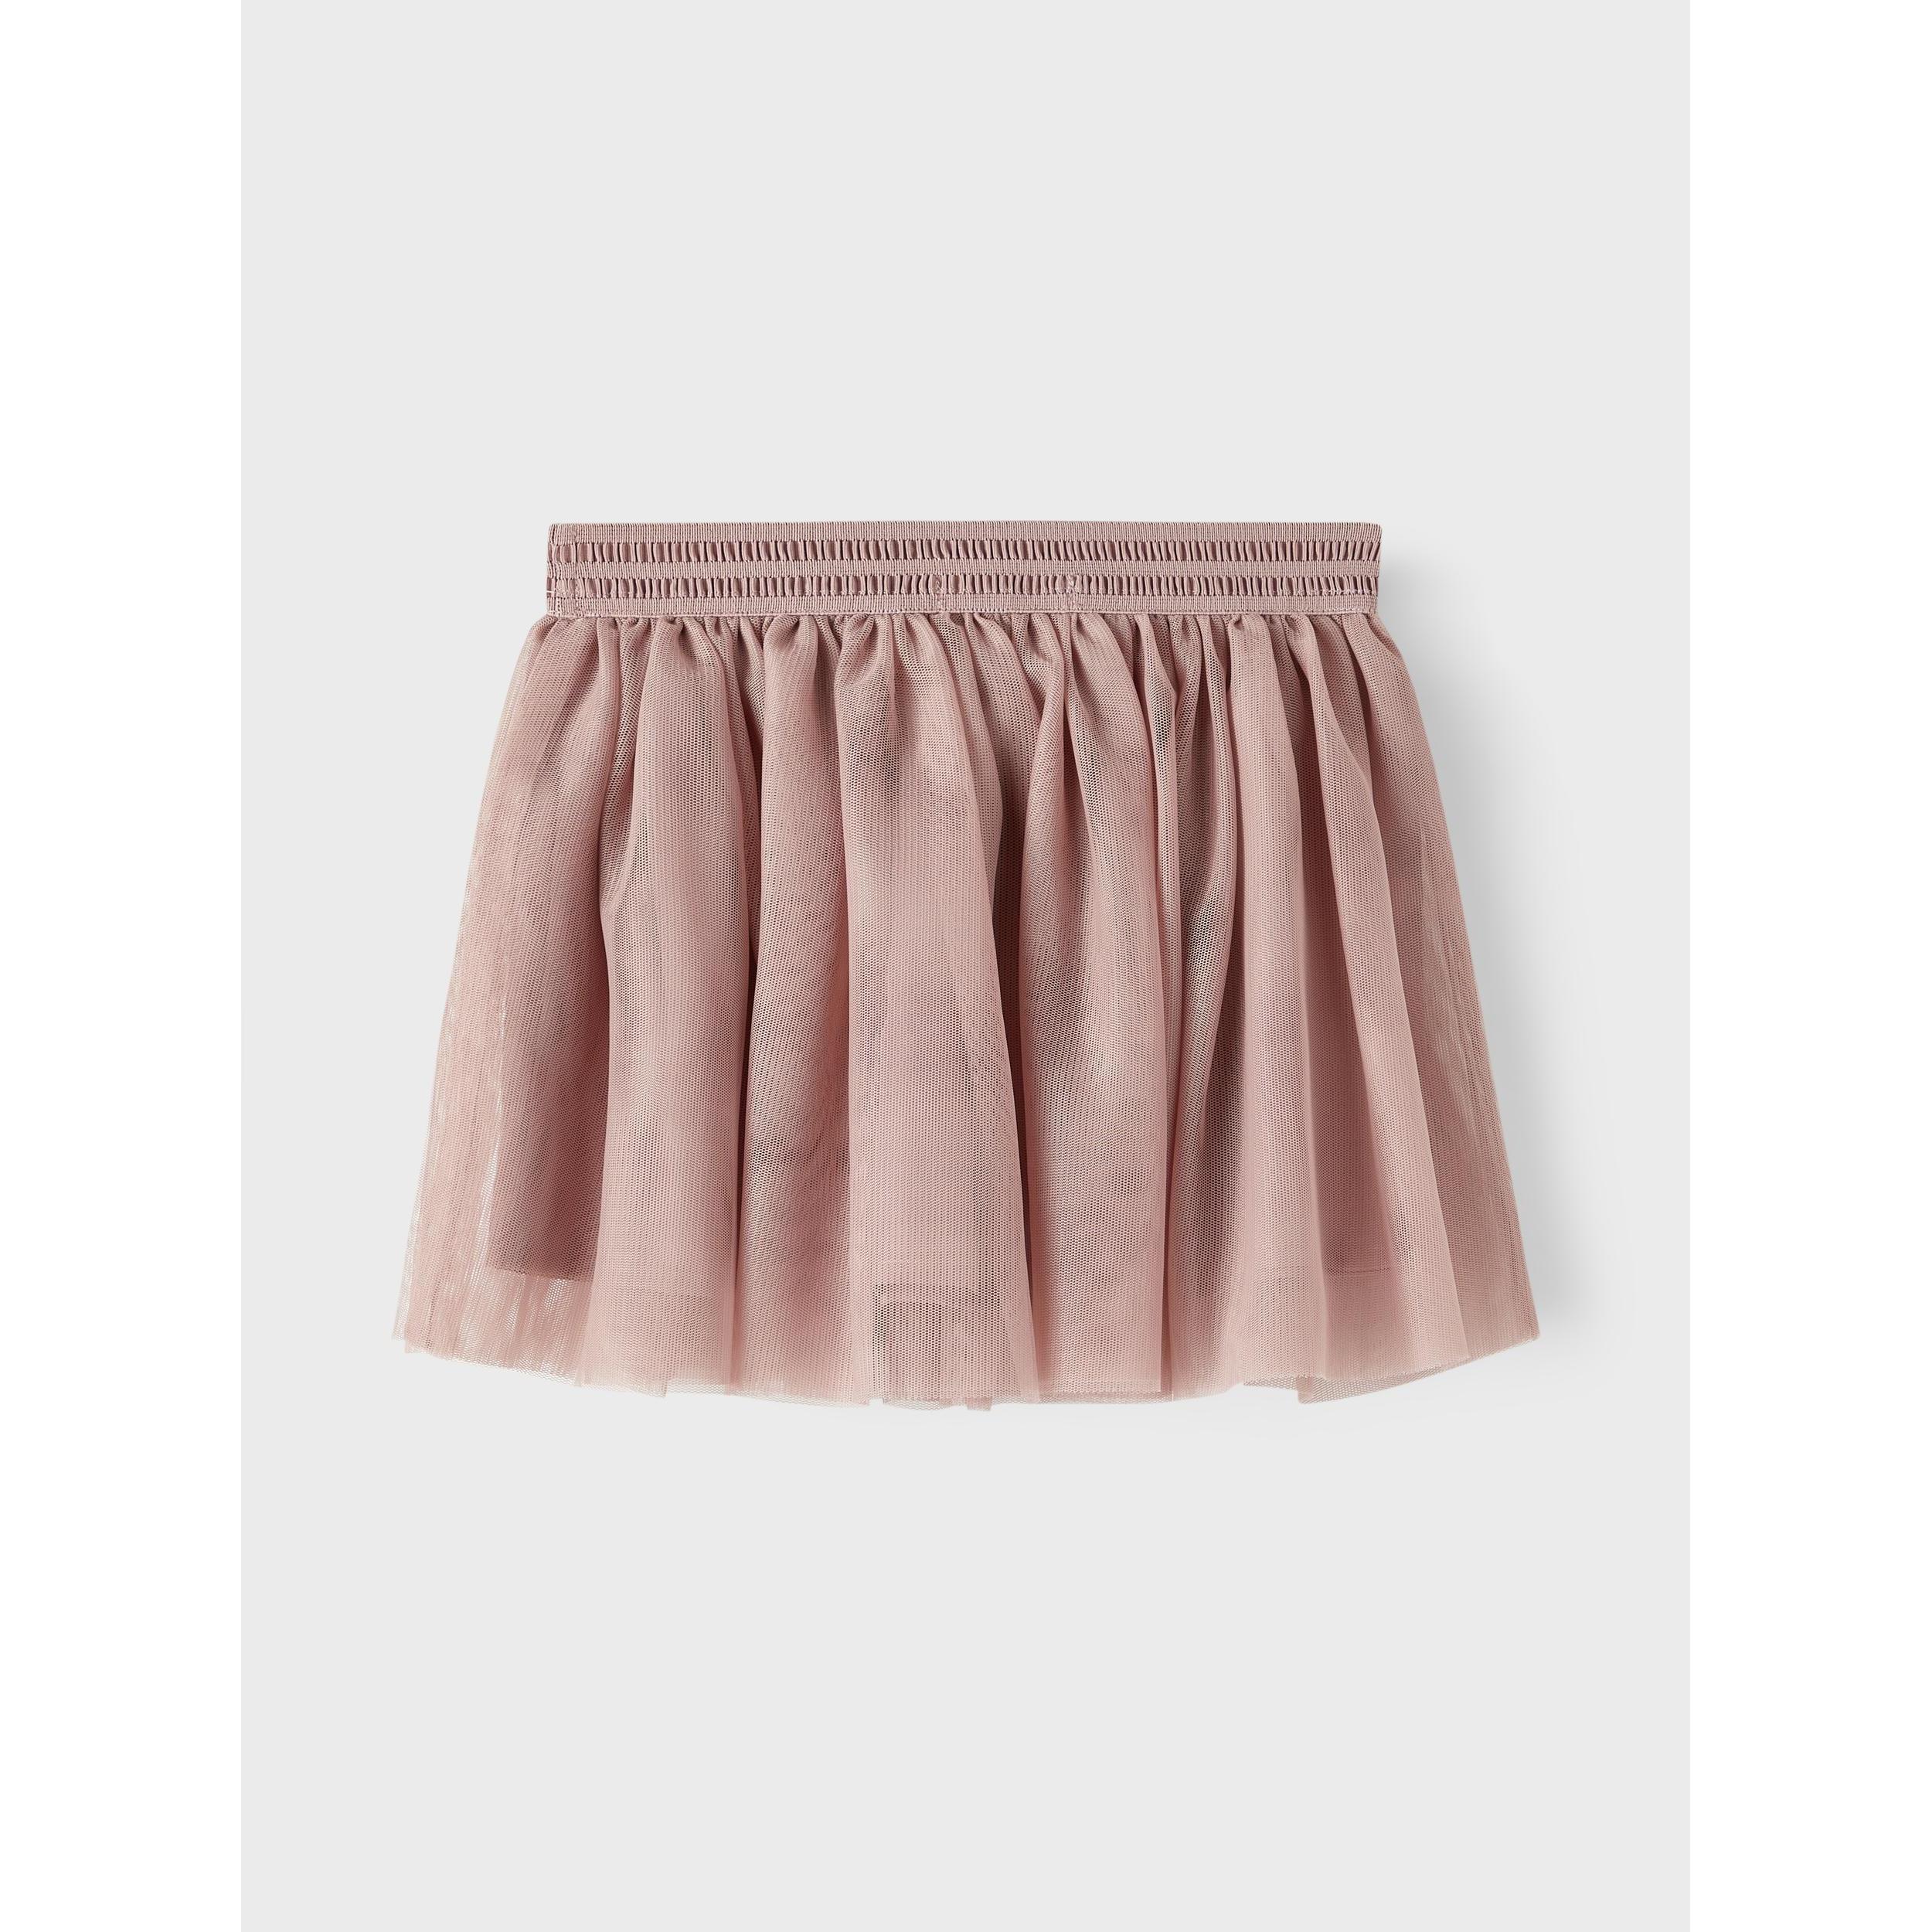 It - Nederdel - Tulle: piger der elsker en tyl nederdel